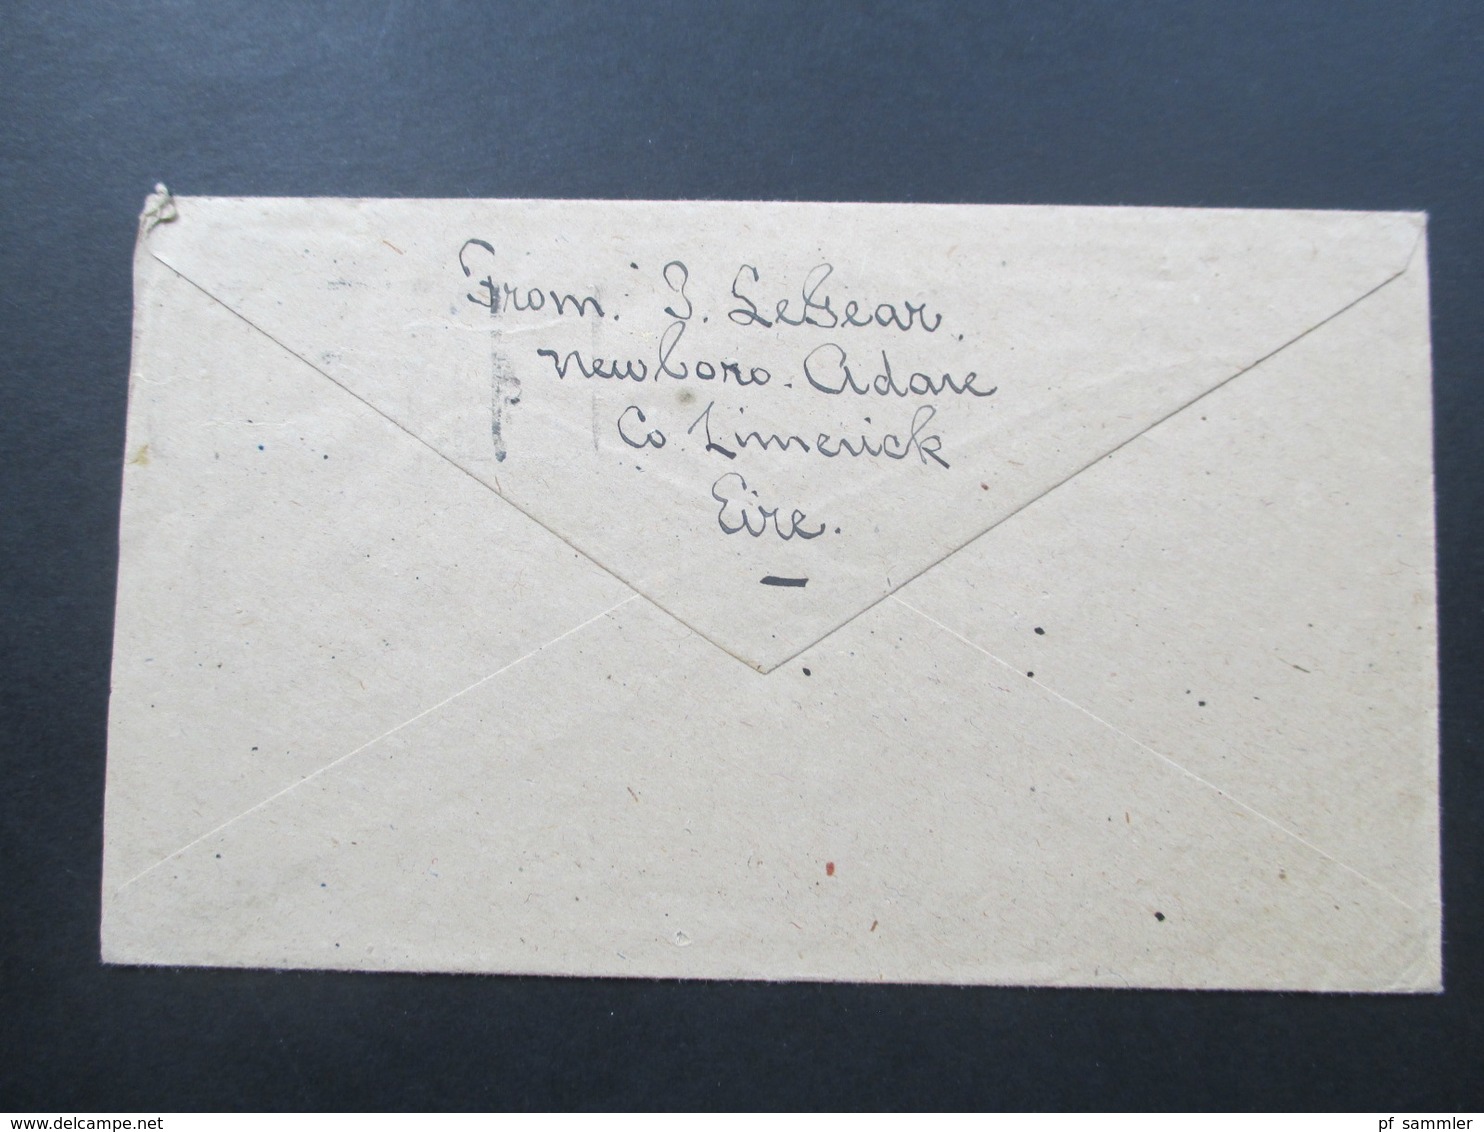 Irland / Eire 1947 Belege in die USA. Air Mail / Luftpost. Interessant??